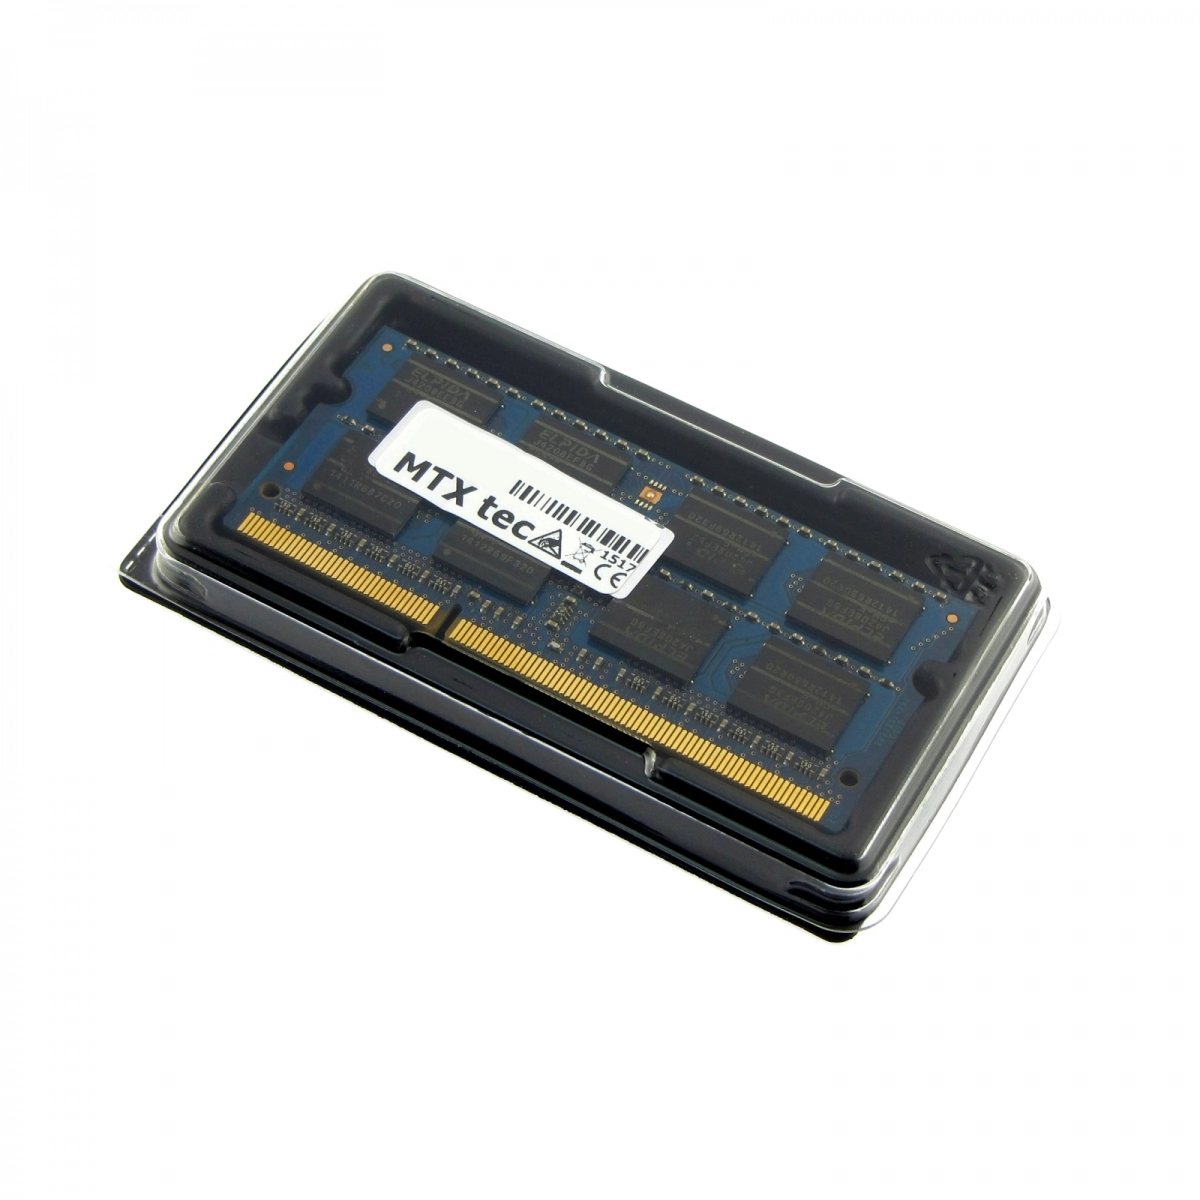 MTXtec Arbeitsspeicher 2 GB RAM für ACER Extensa 5635Z